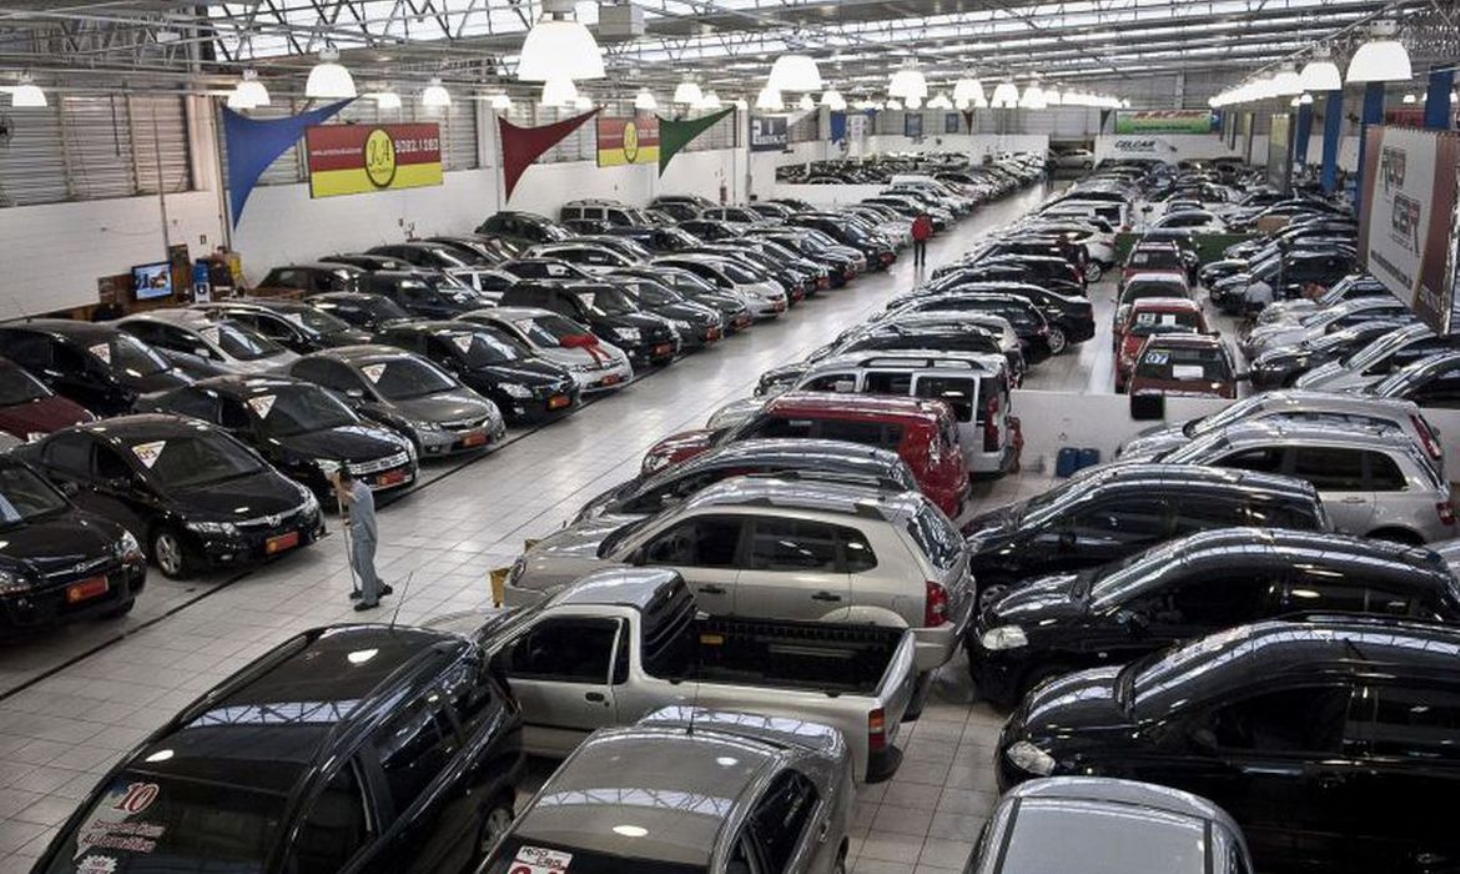 Transferência eletrônica de veículos a compradores começa a funcionar | Jornal da Orla